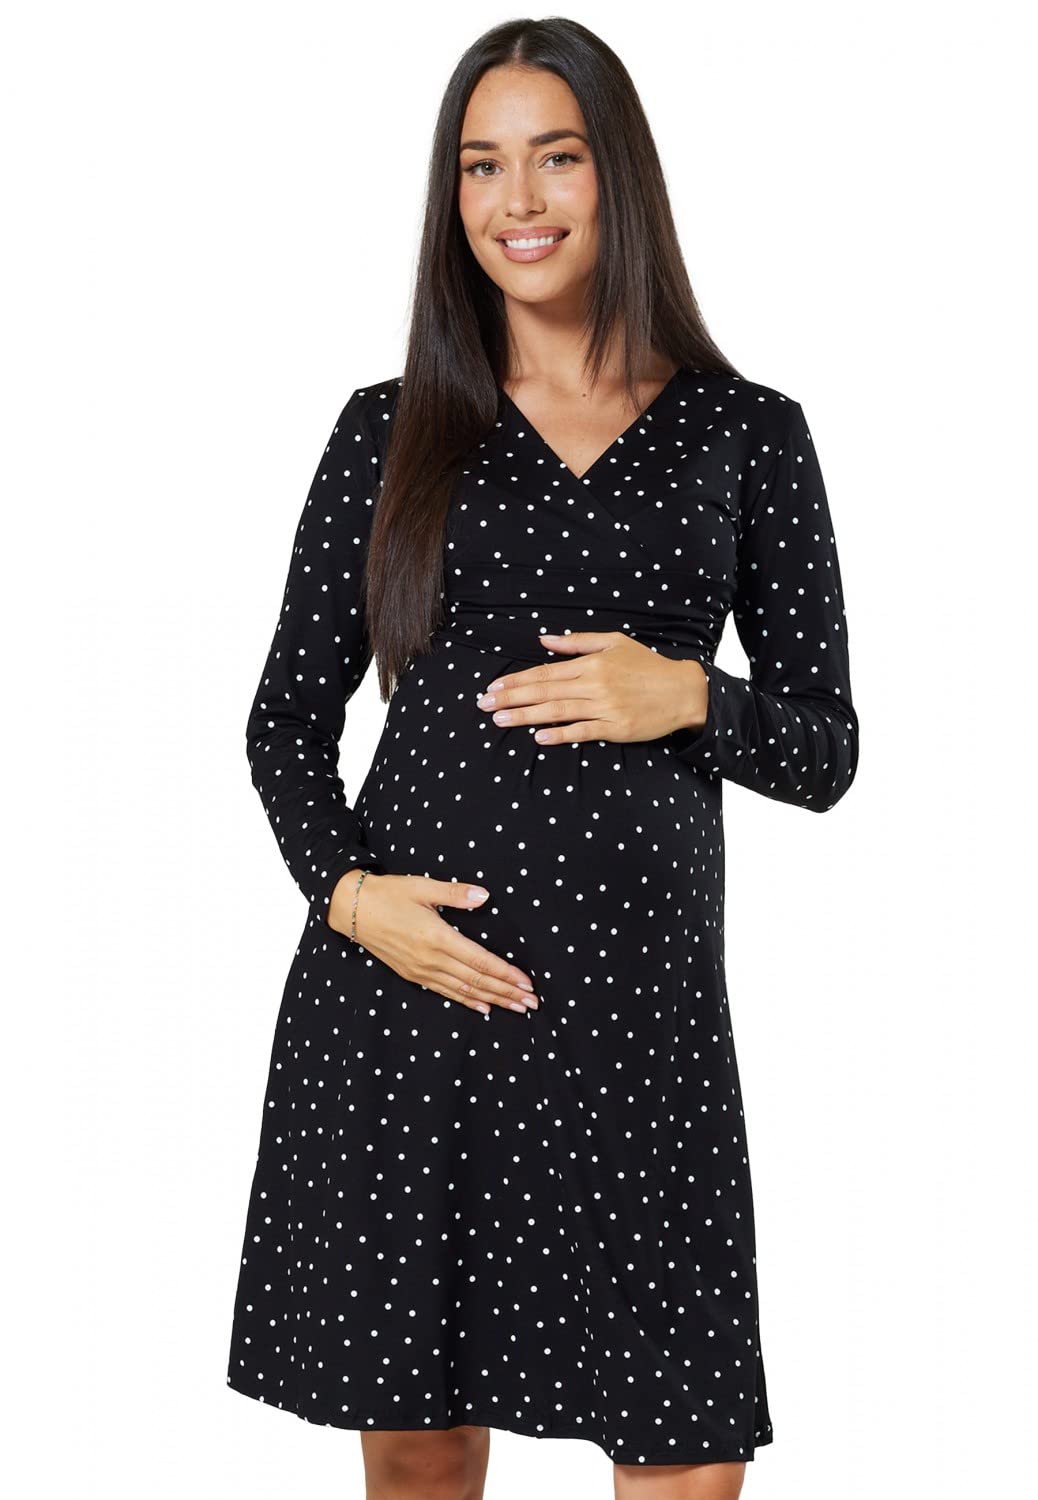 HAPPY MAMA Damen Viskosejersey Umstandskleid Schwangerschafts Kleid Langarm 890p (Schwarz mit kleinen weißen Punkten, 36, S)